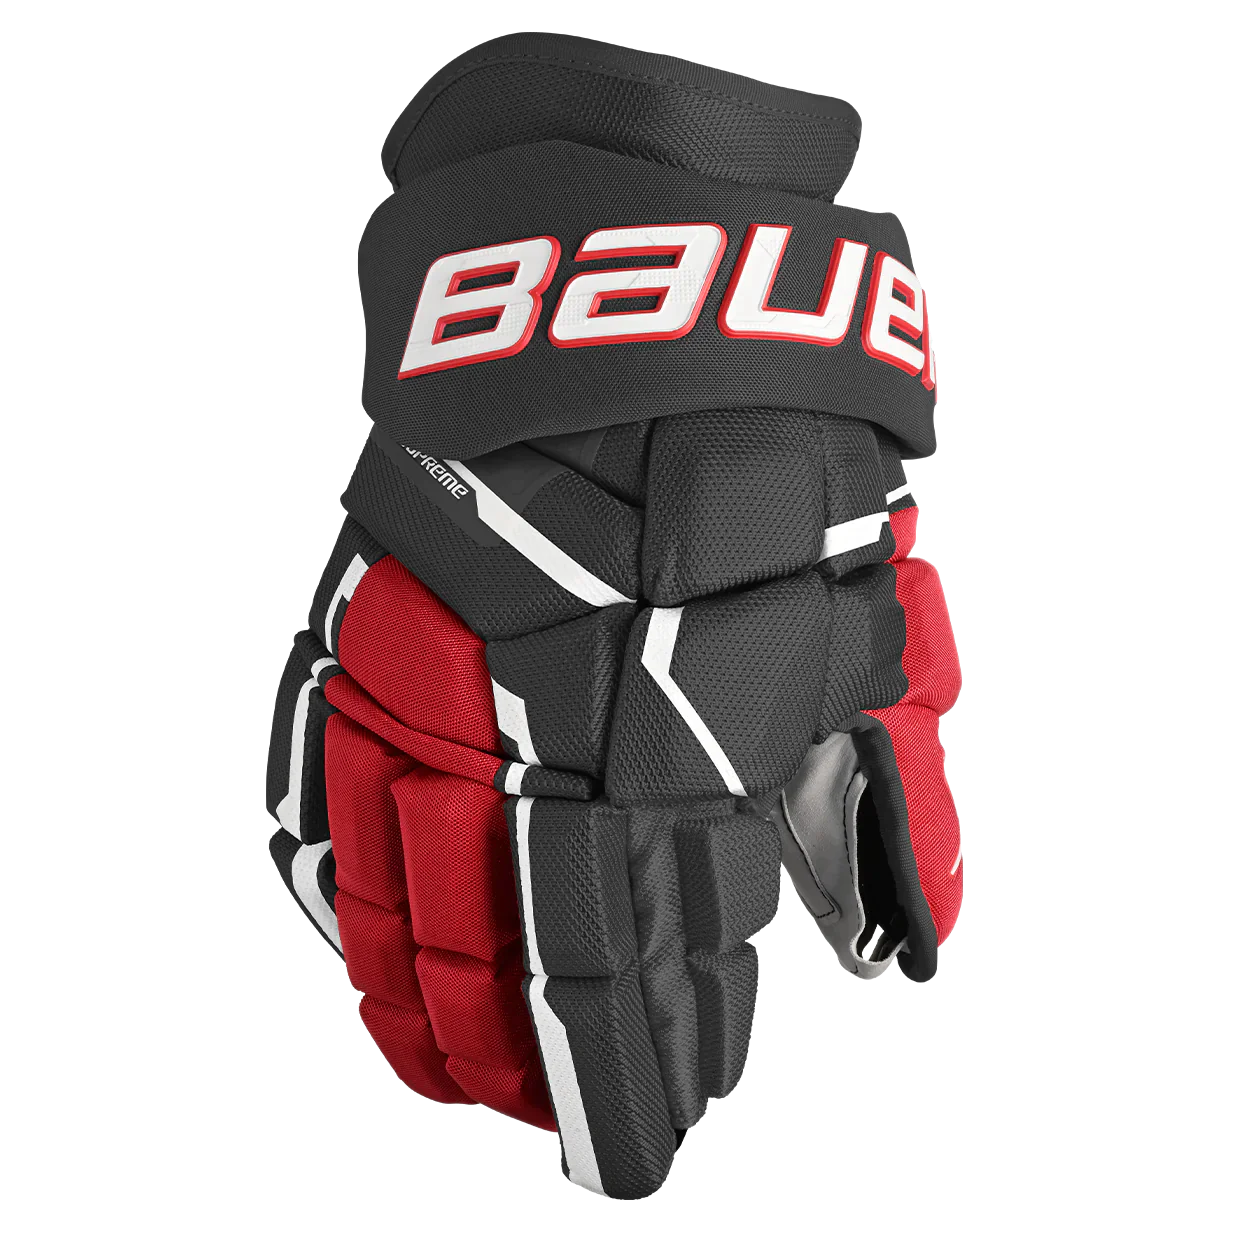 Bauer Supreme Mach Glove Junior